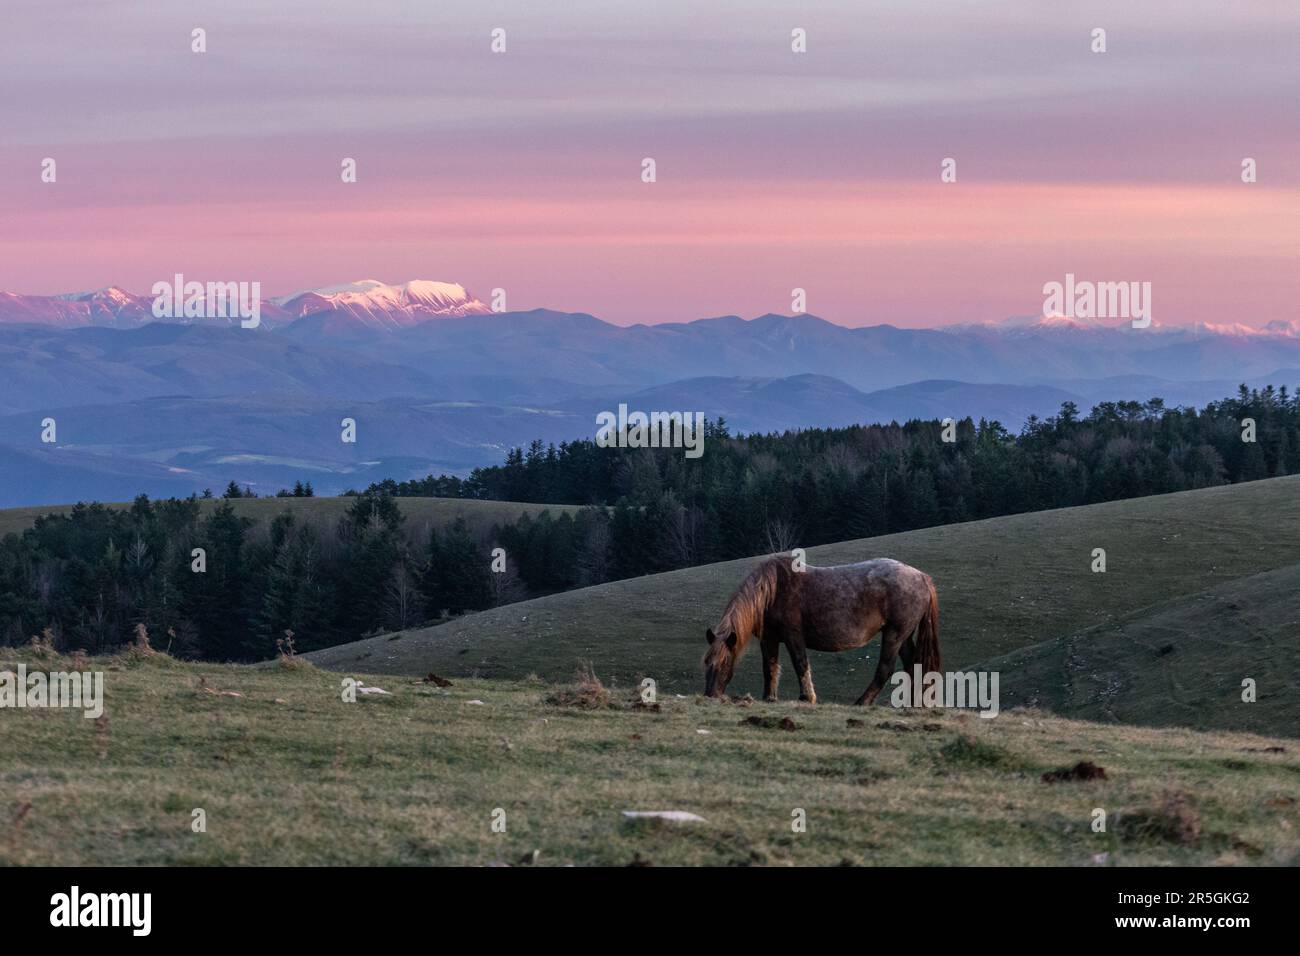 Un cheval brun pastant sur une montagne au crépuscule , avec la brume et les montagnes enneigées en arrière-plan Banque D'Images